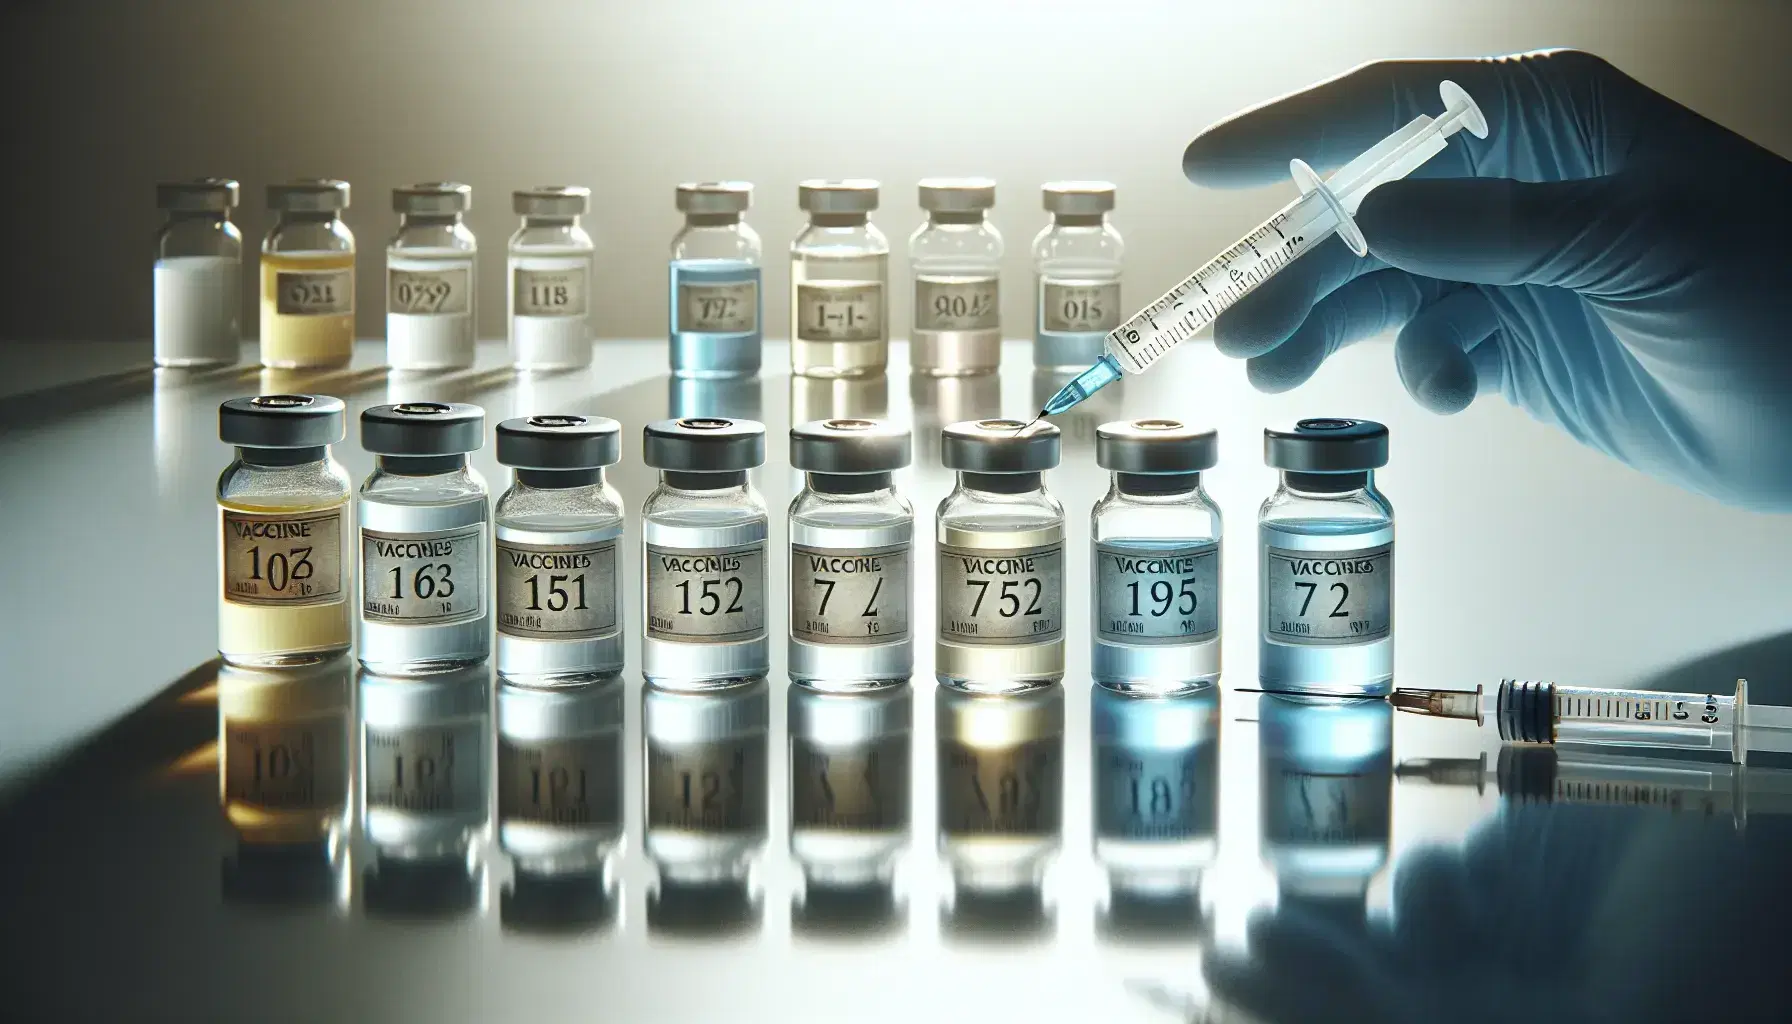 Frascos de vidrio con tapas metálicas conteniendo vacunas de colores variados en superficie blanca, junto a una jeringa y manos enguantadas en azul.